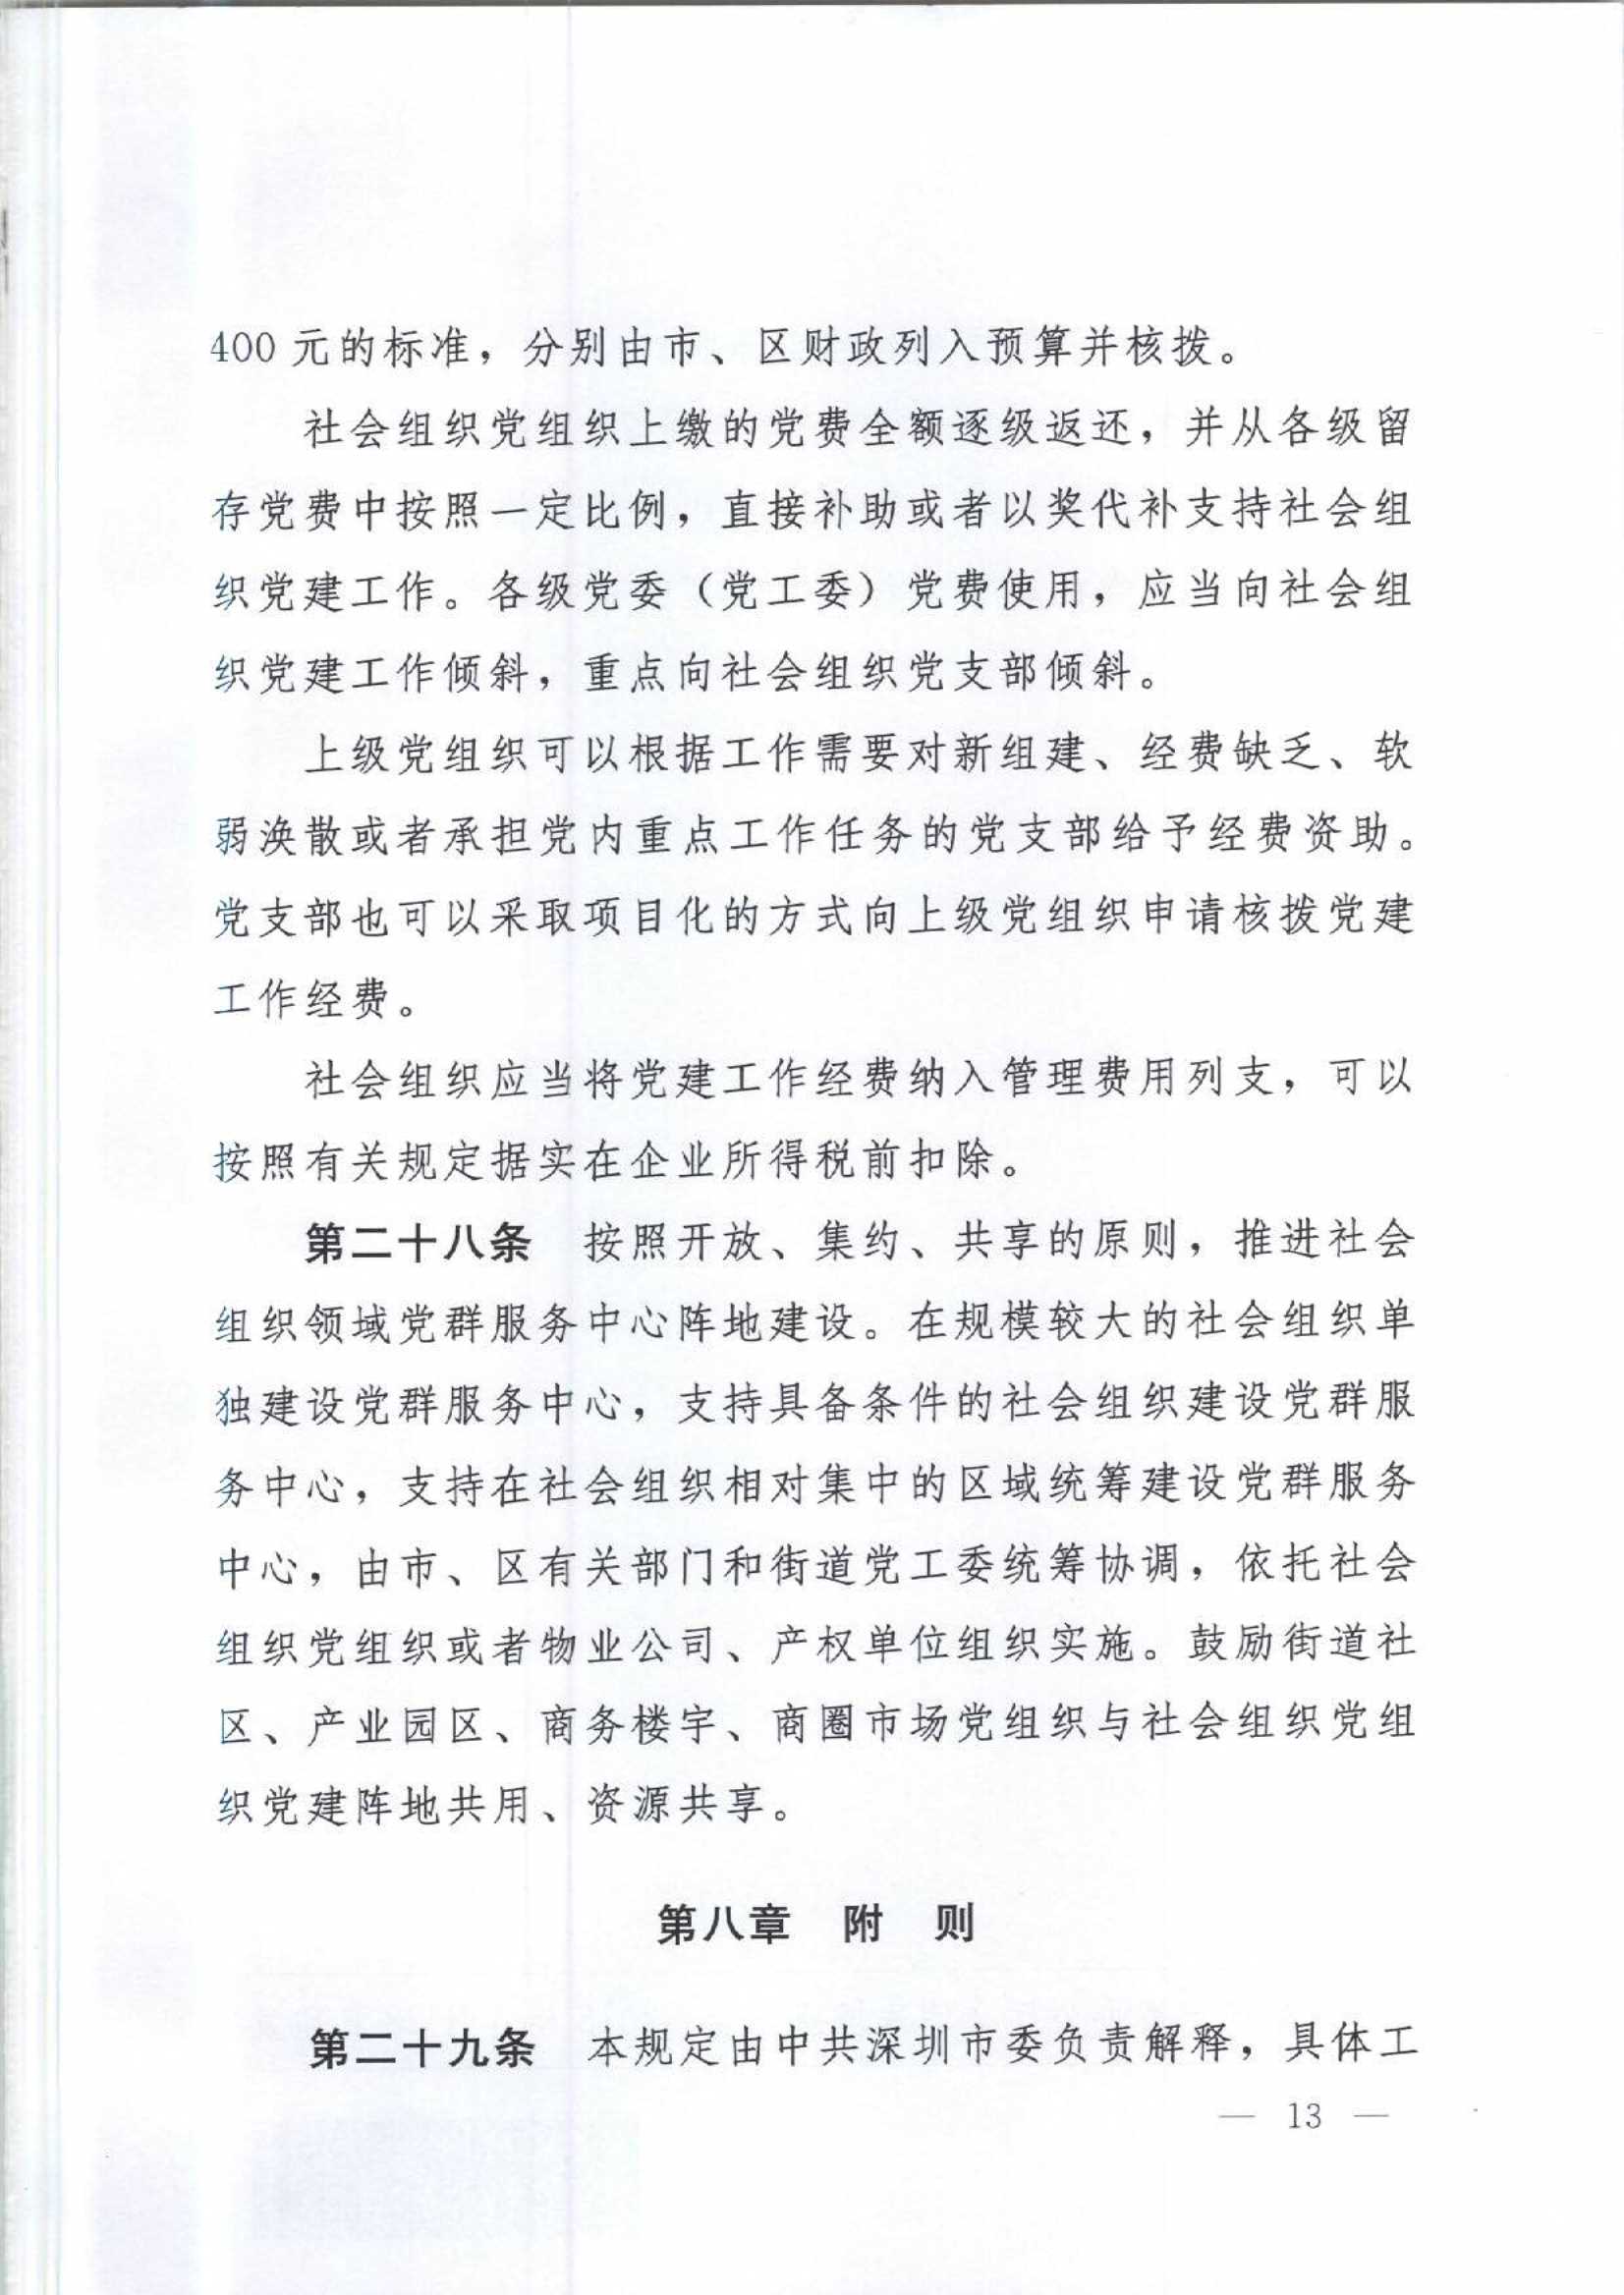 4.深圳市社会组织党的建设工作规定_13.Jpeg